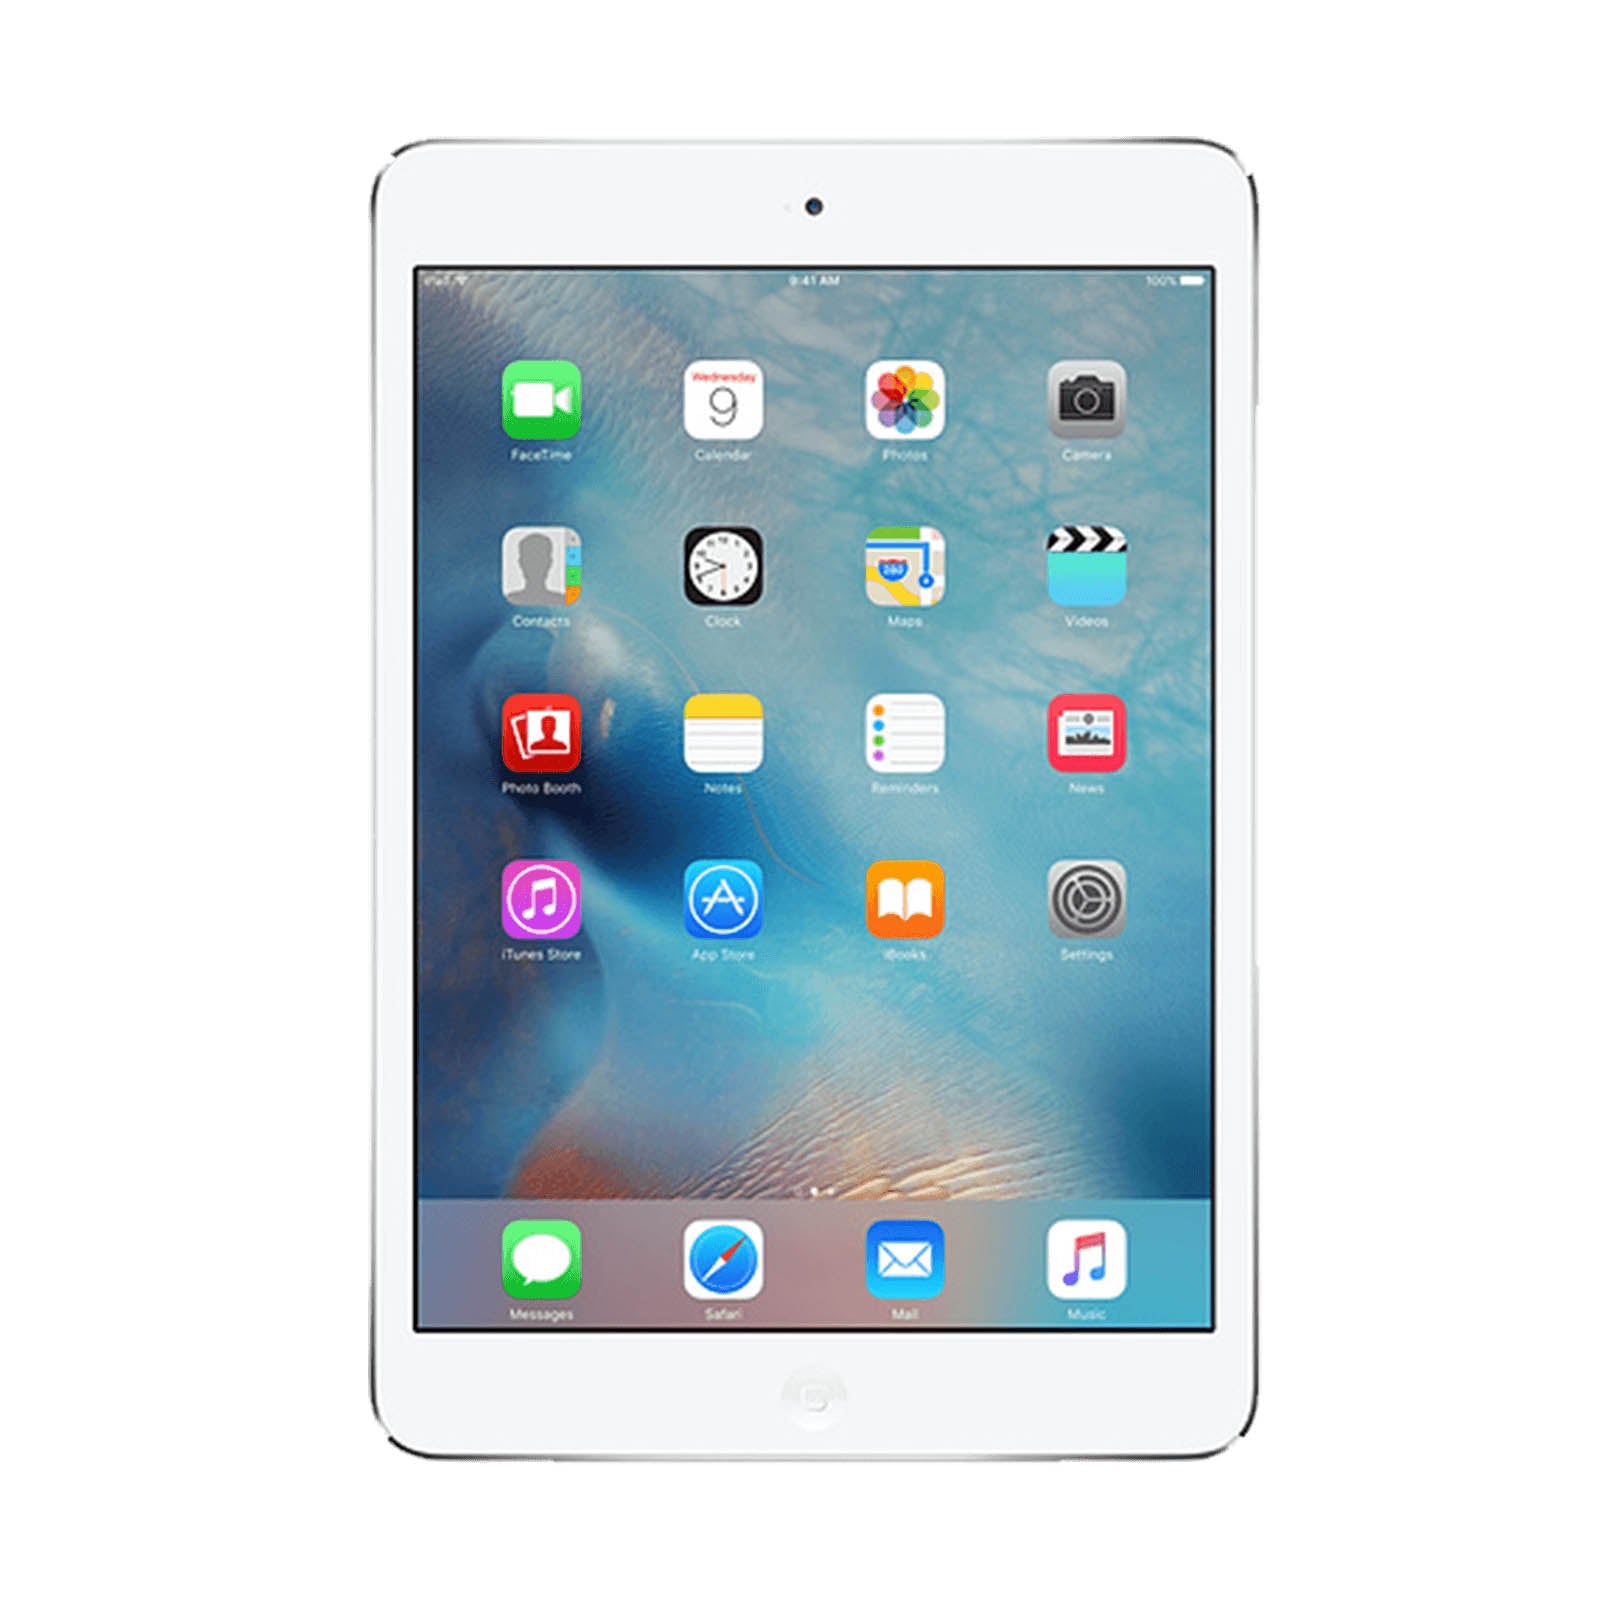 Apple iPad mini 2 16GB White Pristine - Unlocked